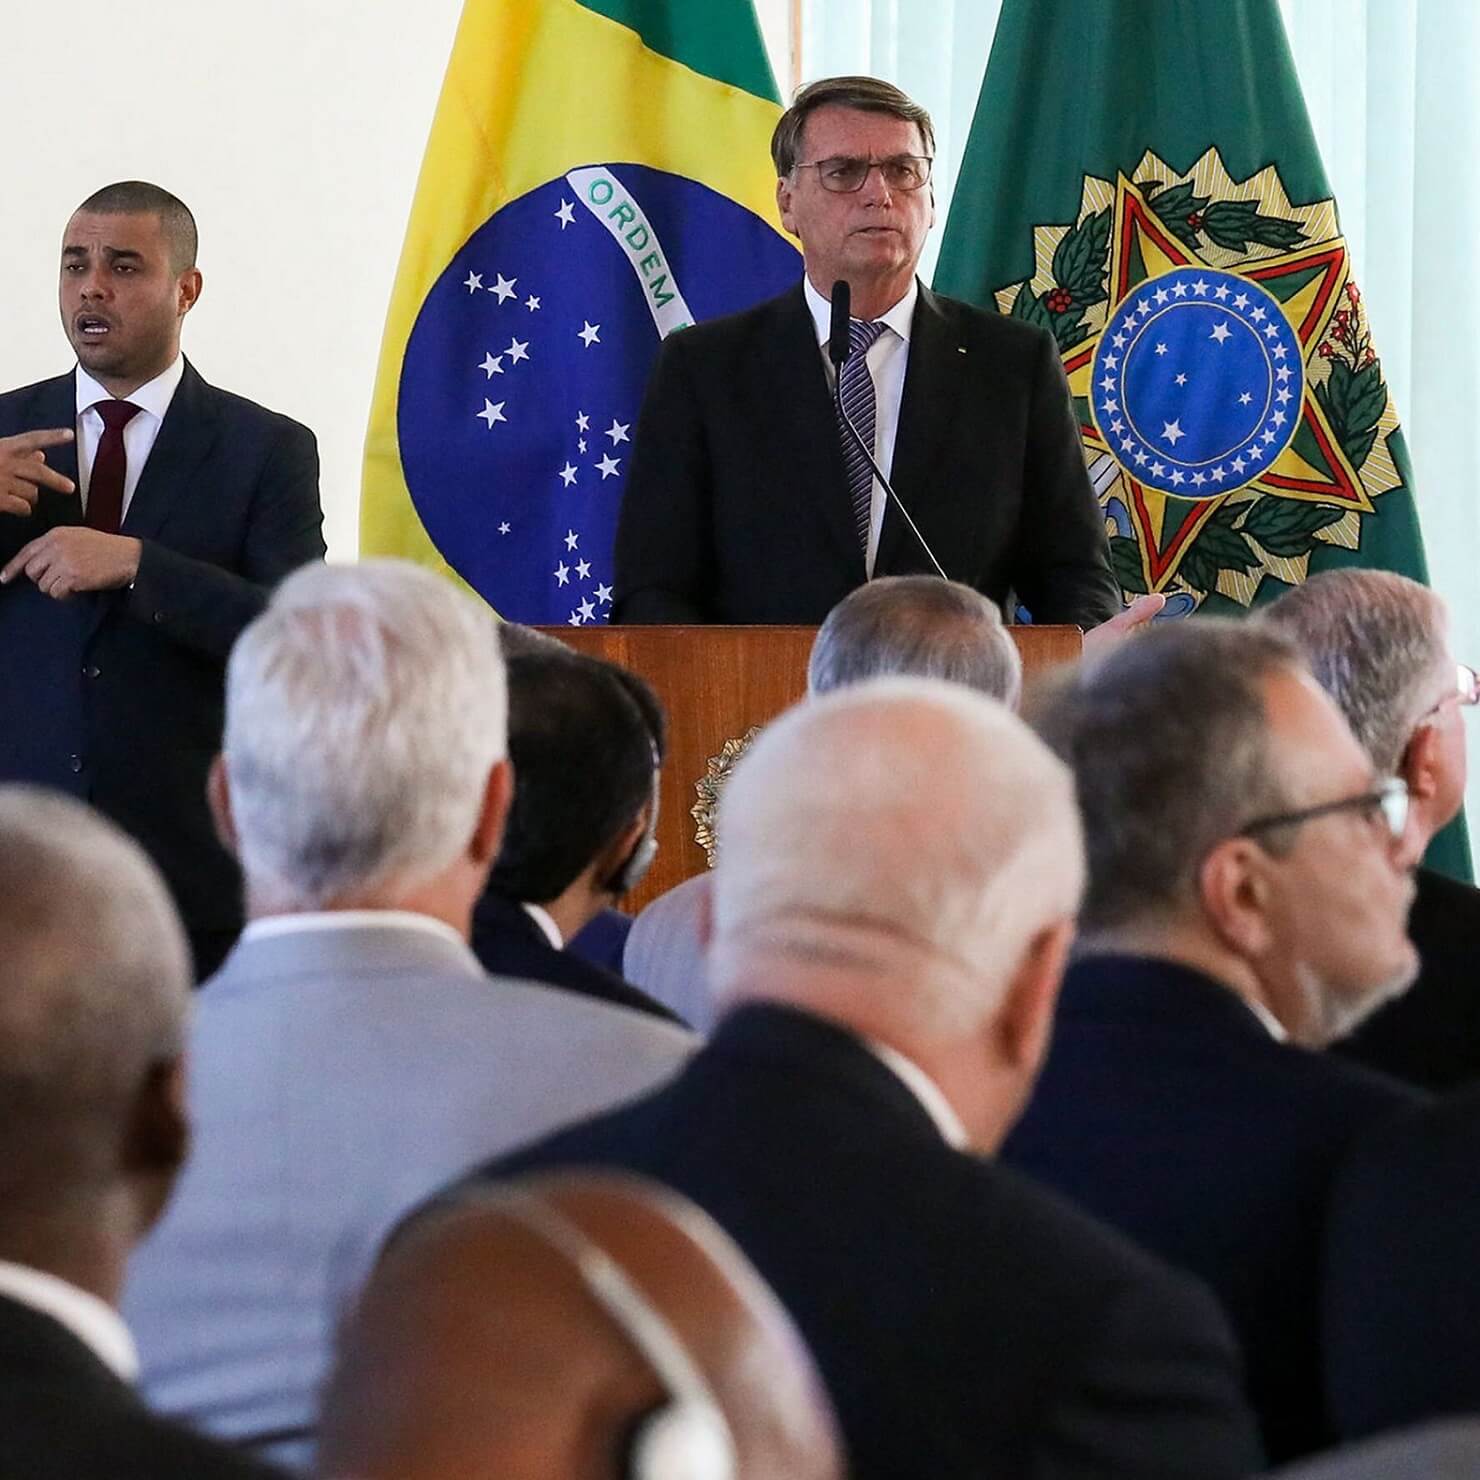 Brazil’s Voting System “Completely Vulnerable”, Bolsonaro Tells Diplomats